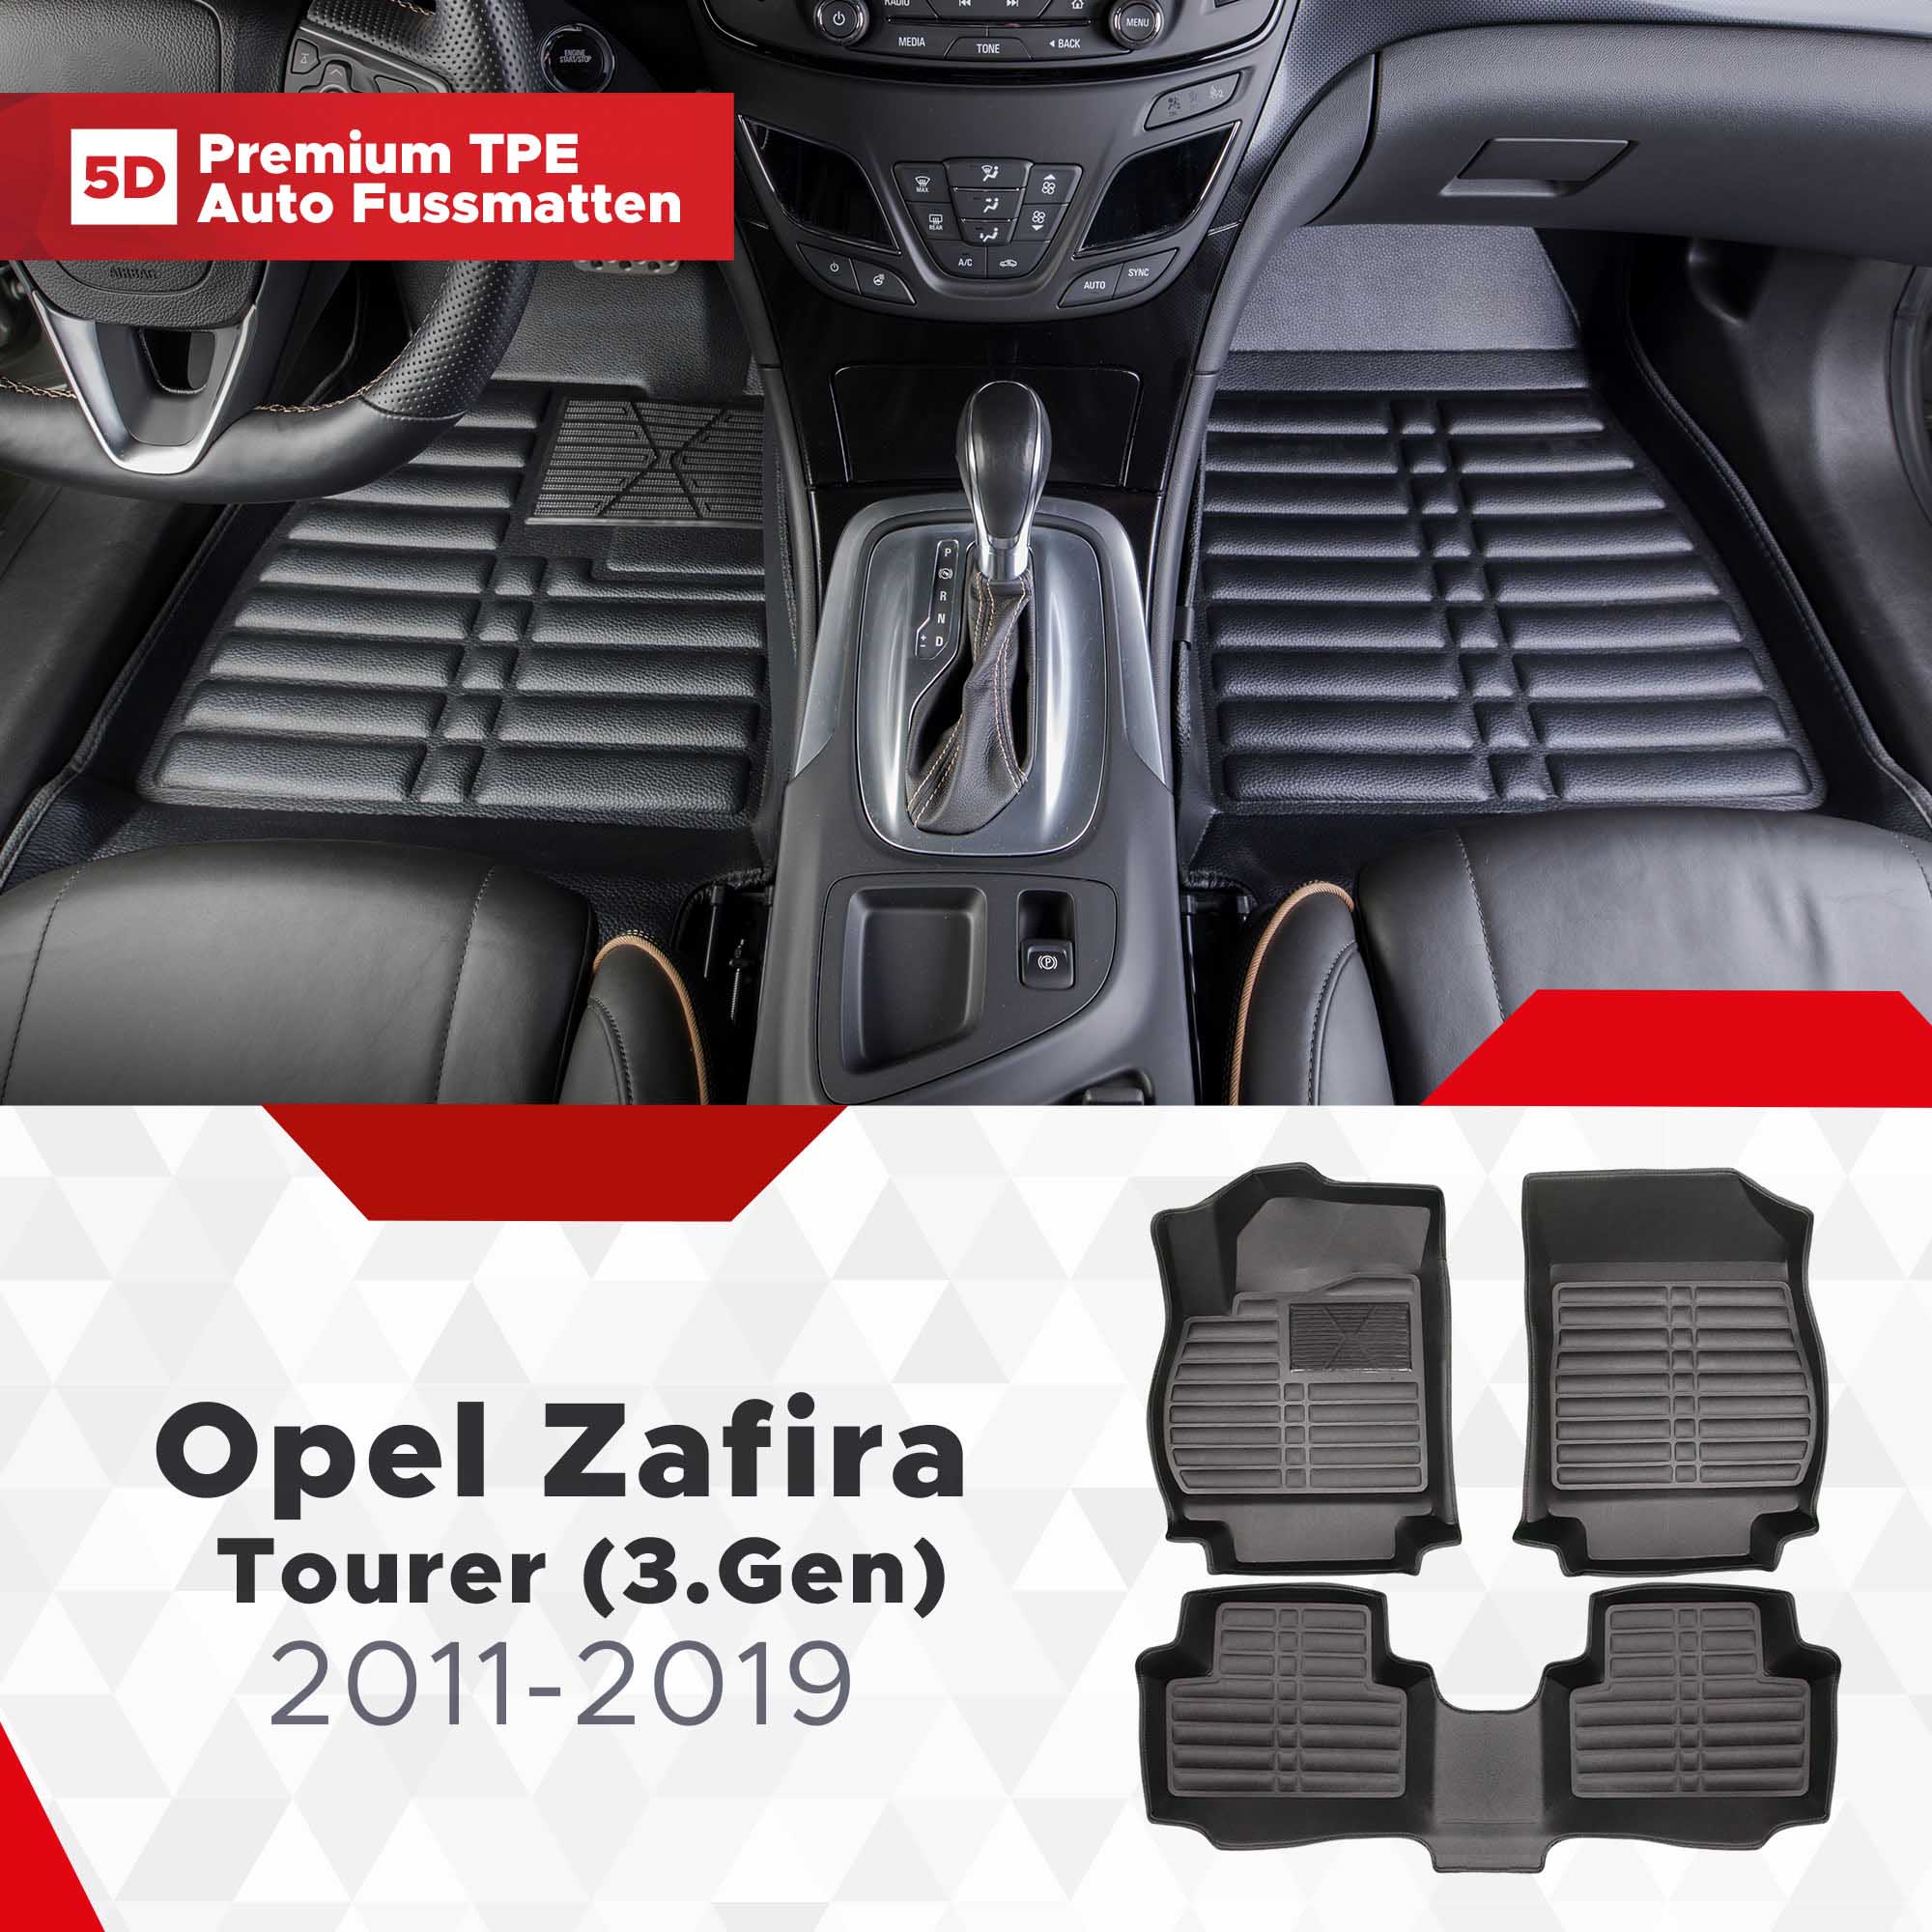 Fussmatten 2011-2019 Bj (3.Gen) 5D Opel Tourer TPE Zafira